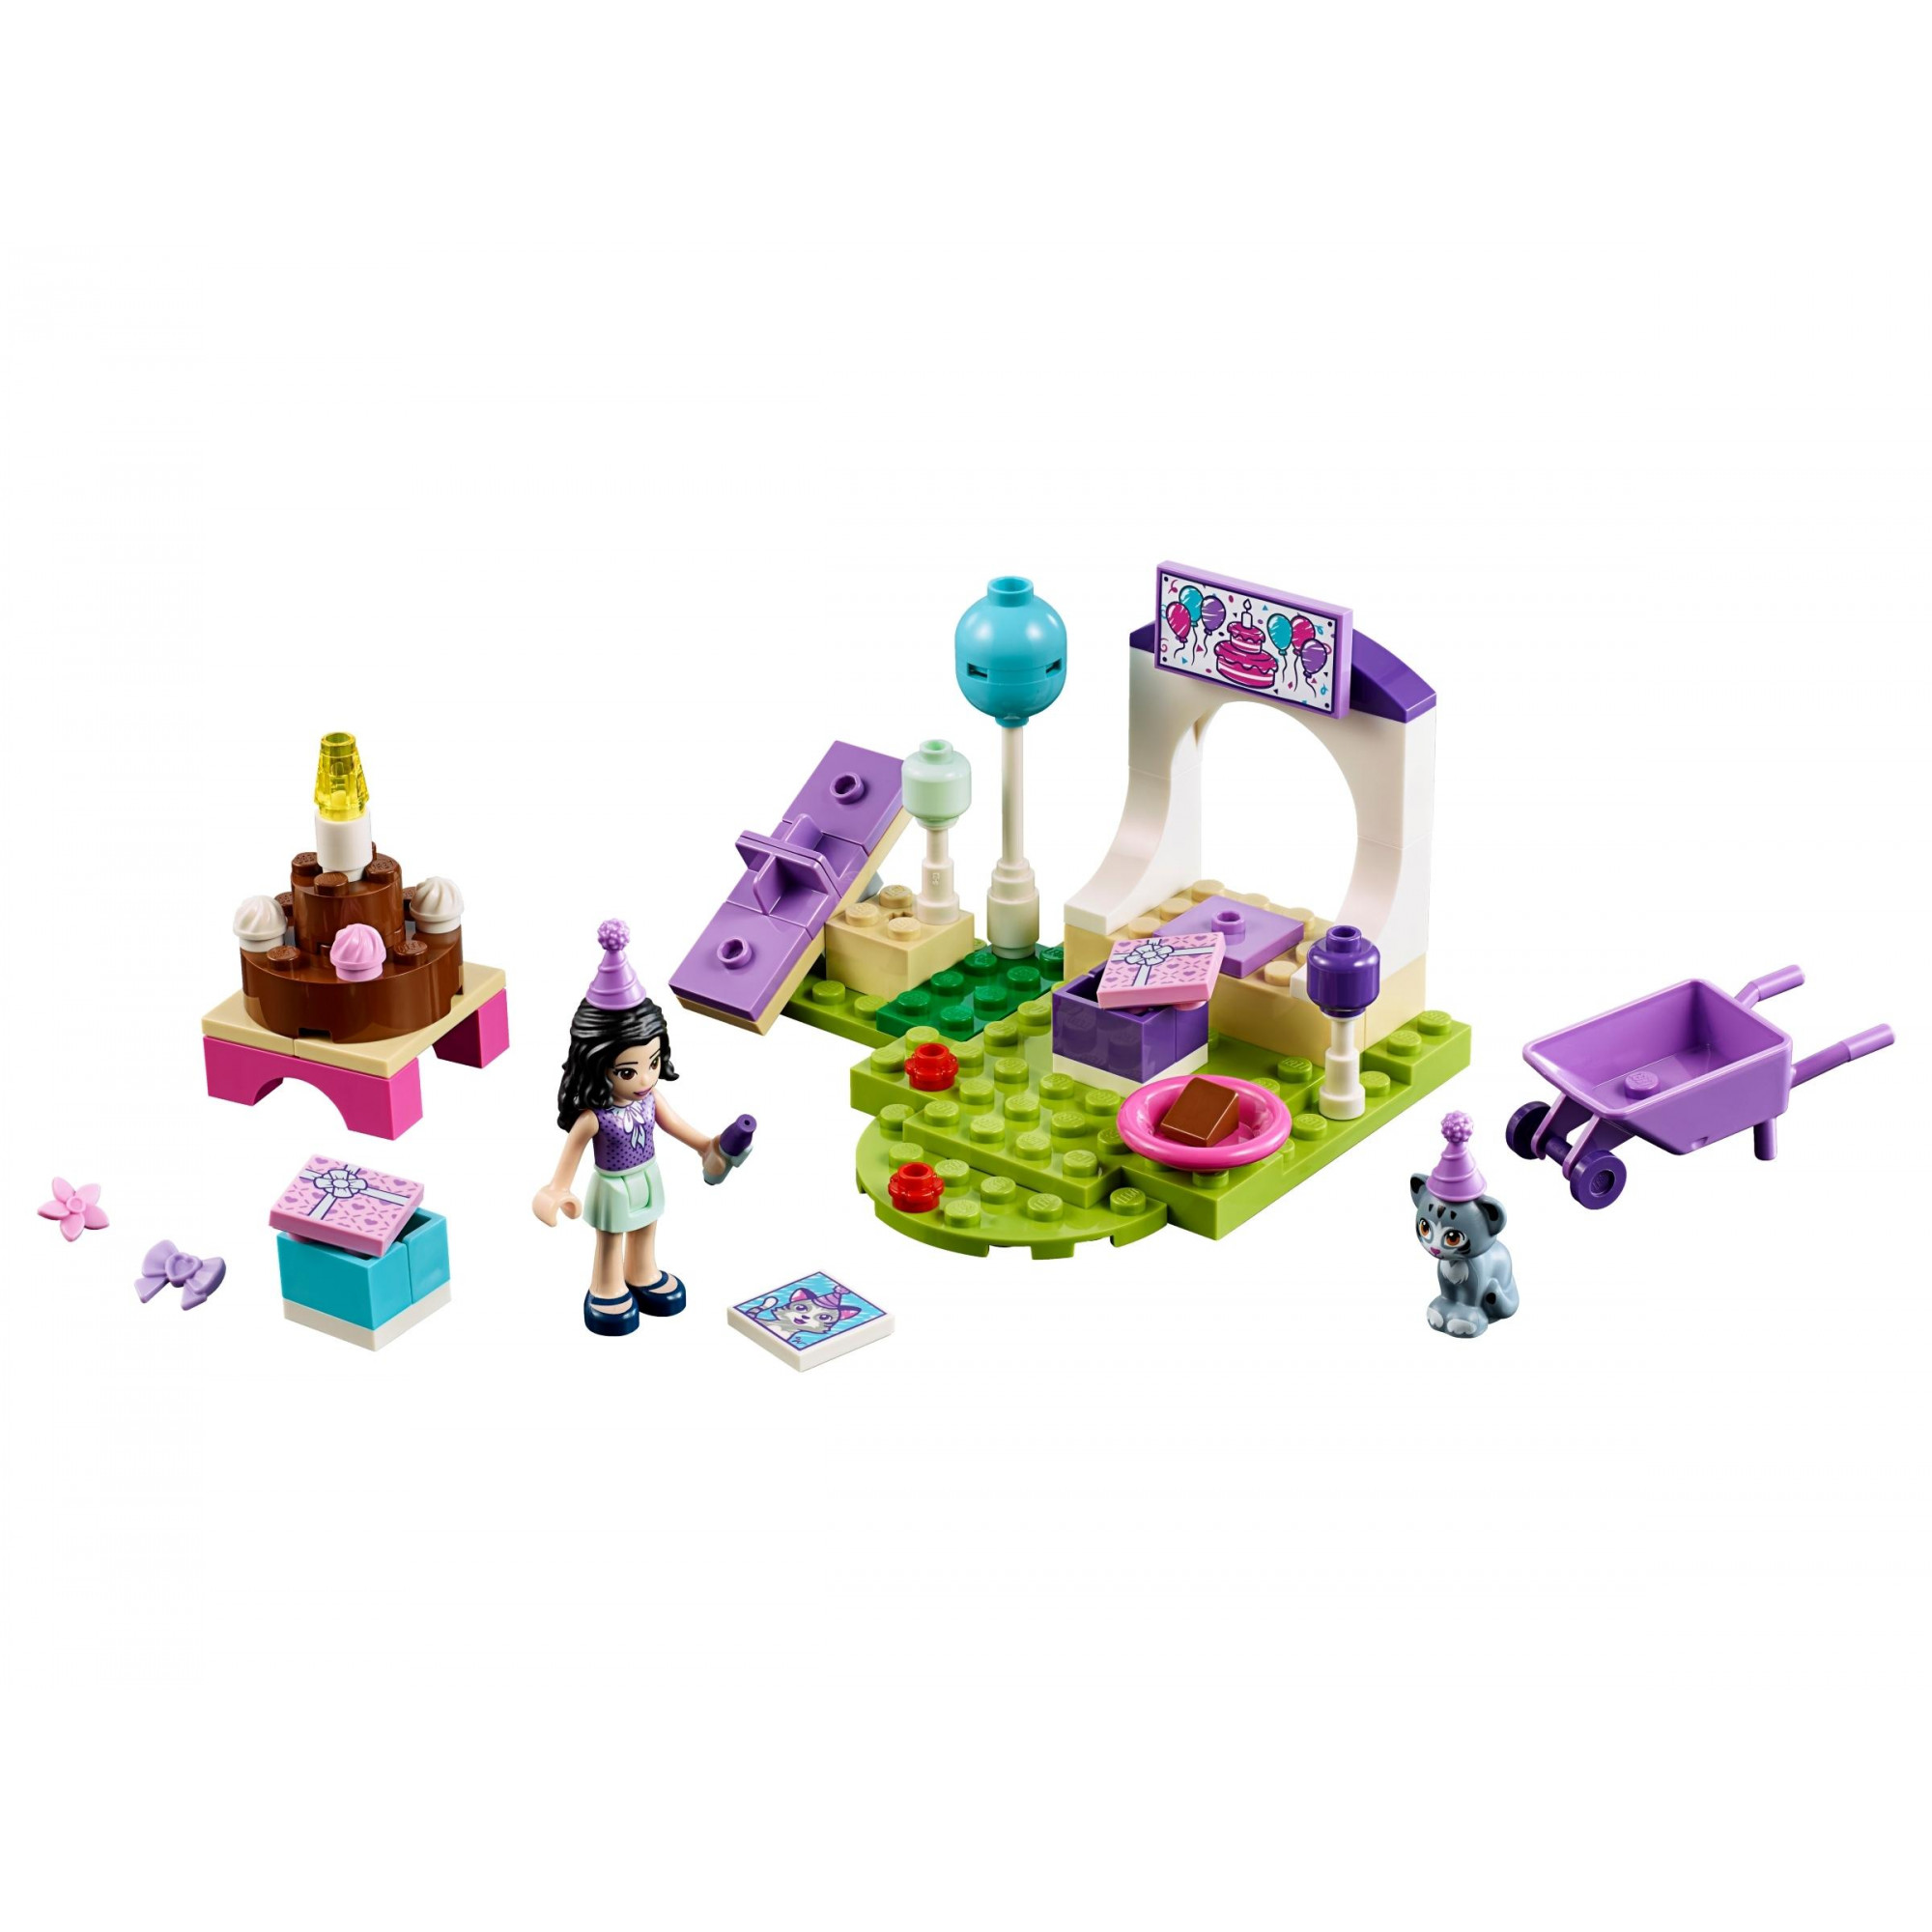 LEGO Juniors Вечеринка домашних любимцев Эммы (10748) - зображення 1